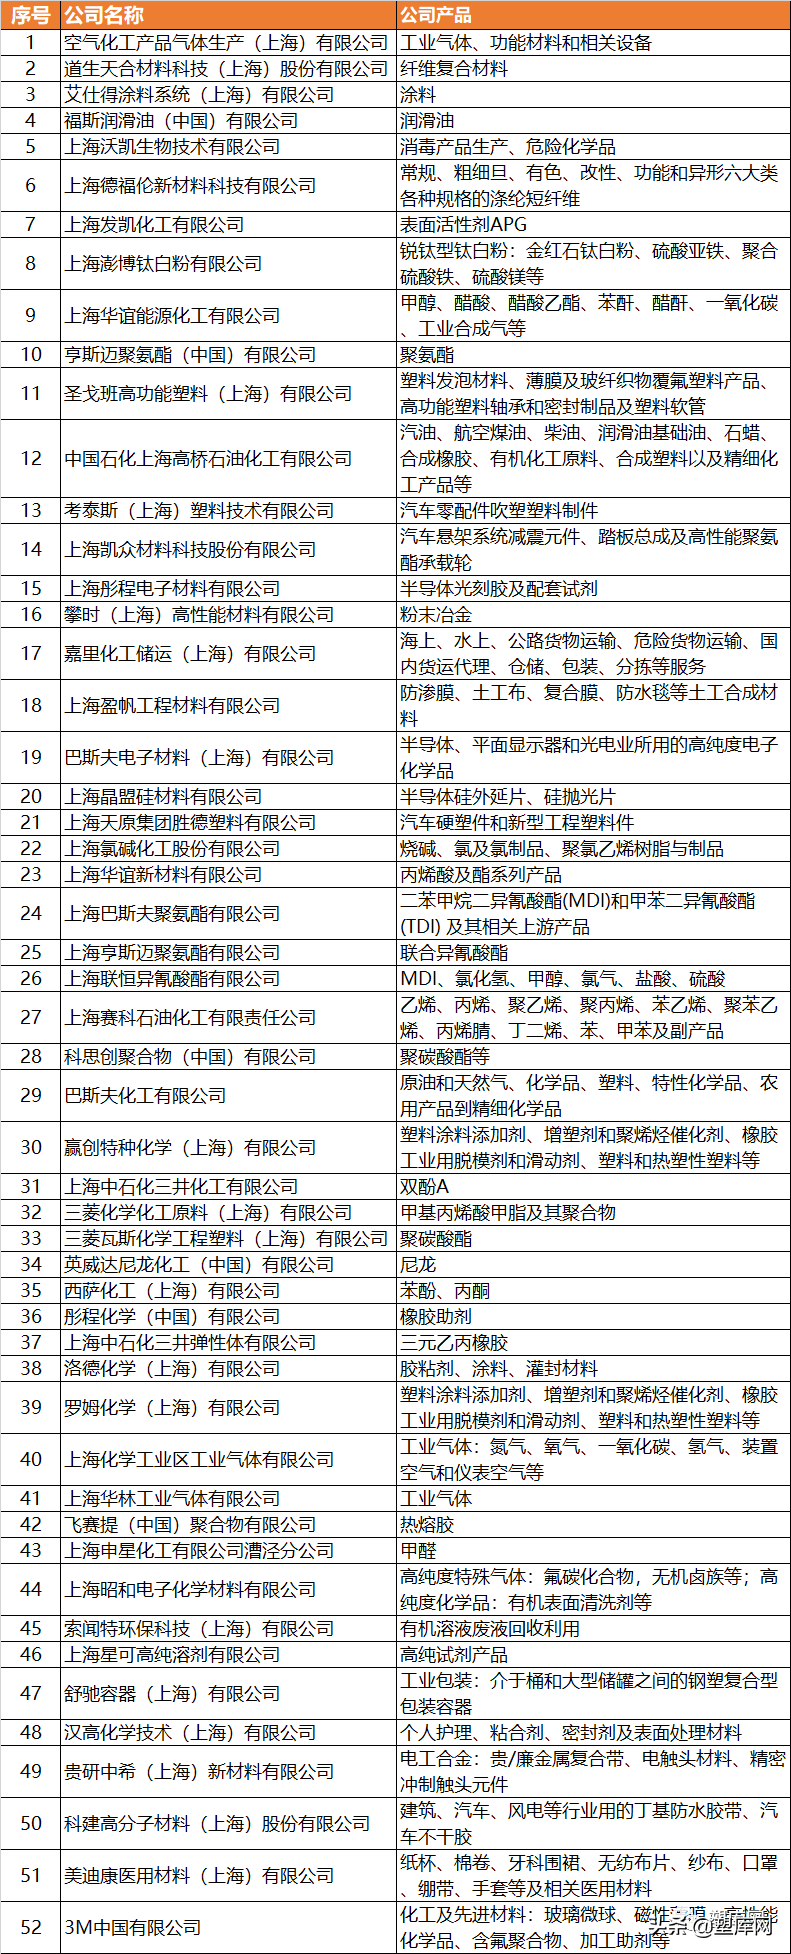 上海启动复工复产！50+塑化企业在列（附清单）